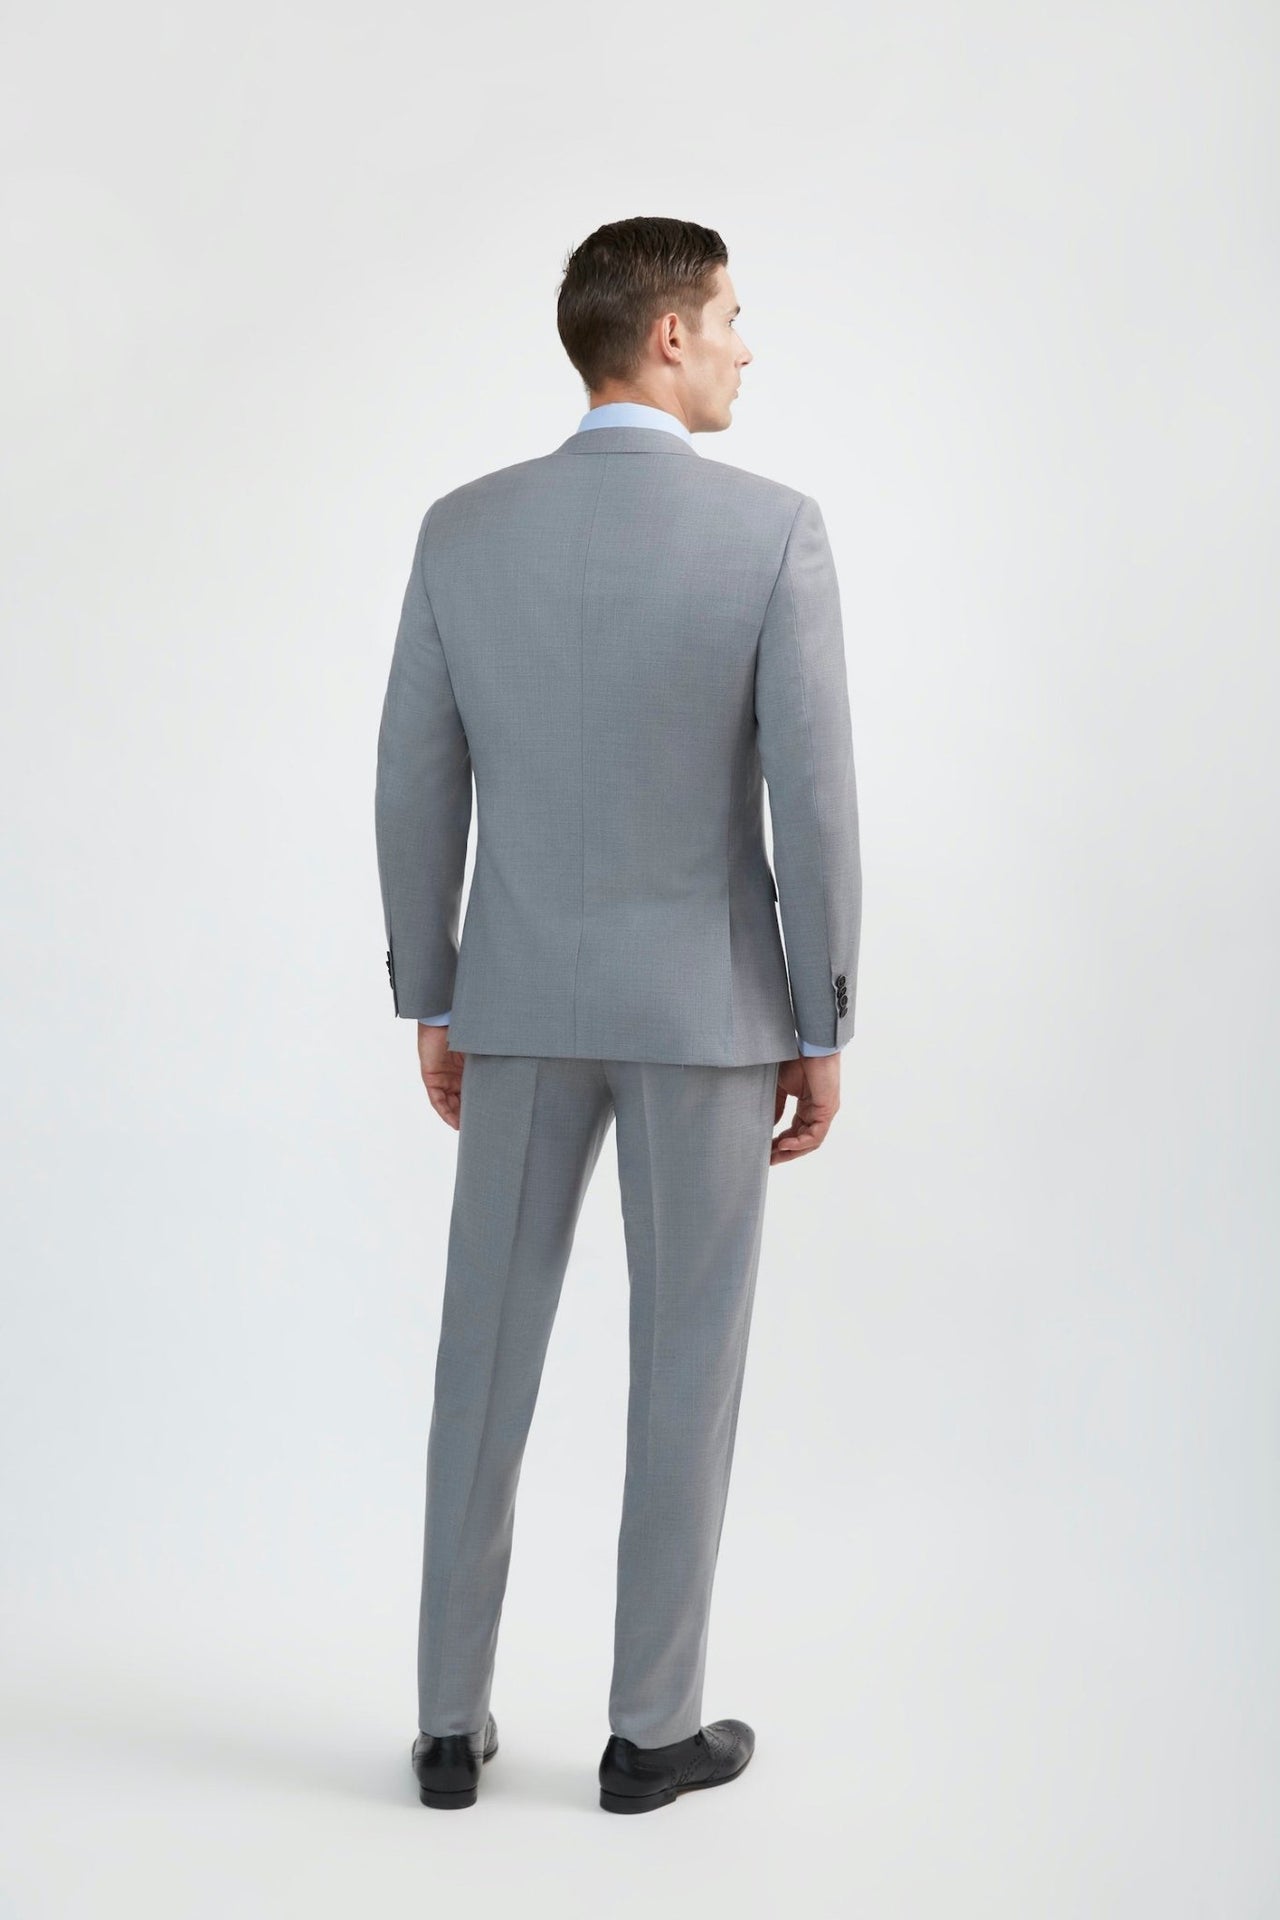 Light Grey Suit  Order Men's Light Grey Suit Online at Tomasso Black –  Tomasso Black